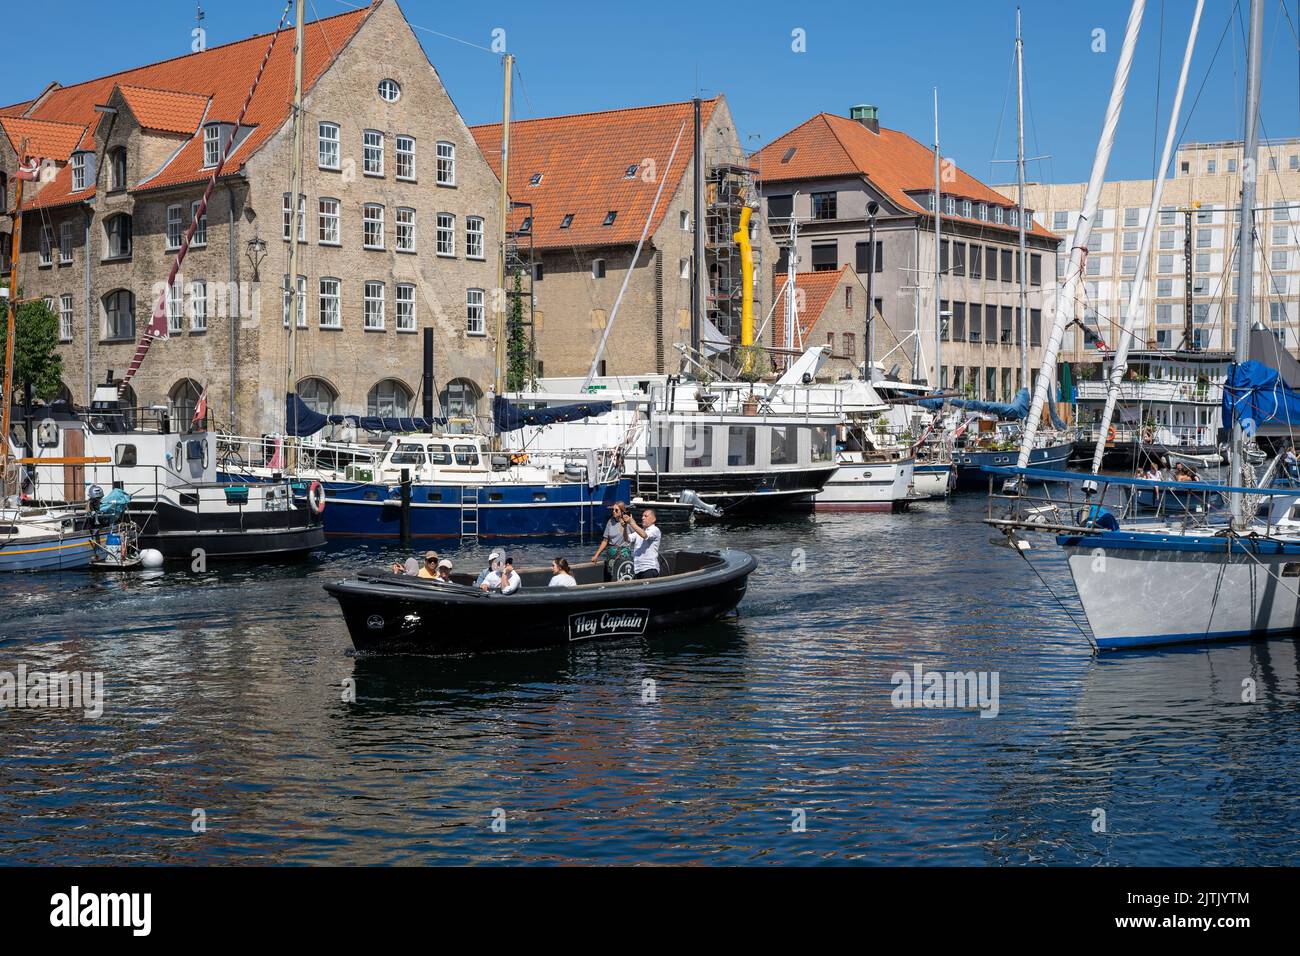 Christianshavn District in Copenhagen, Denmark Stock Photo